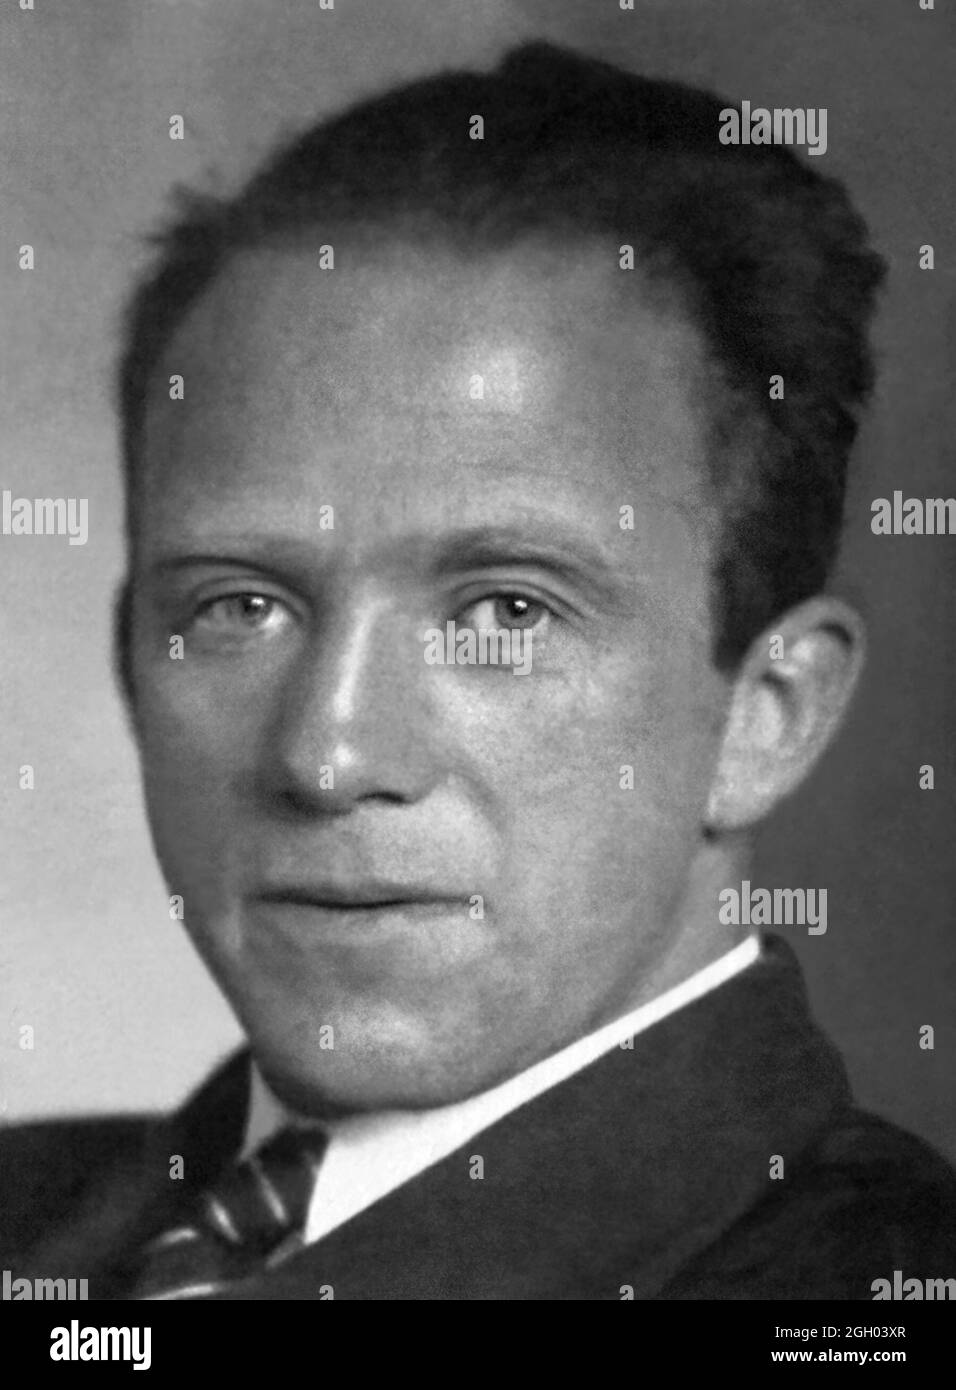 Porträt von Werner Heisenberg (1901-1976), deutscher theoretischer Physiker und Pionier der Quantenmechanik, die die 1932 Nobelpreis für Physik für seine Theorie und Anwendungen der Quantenmechanik gewonnen. Stockfoto